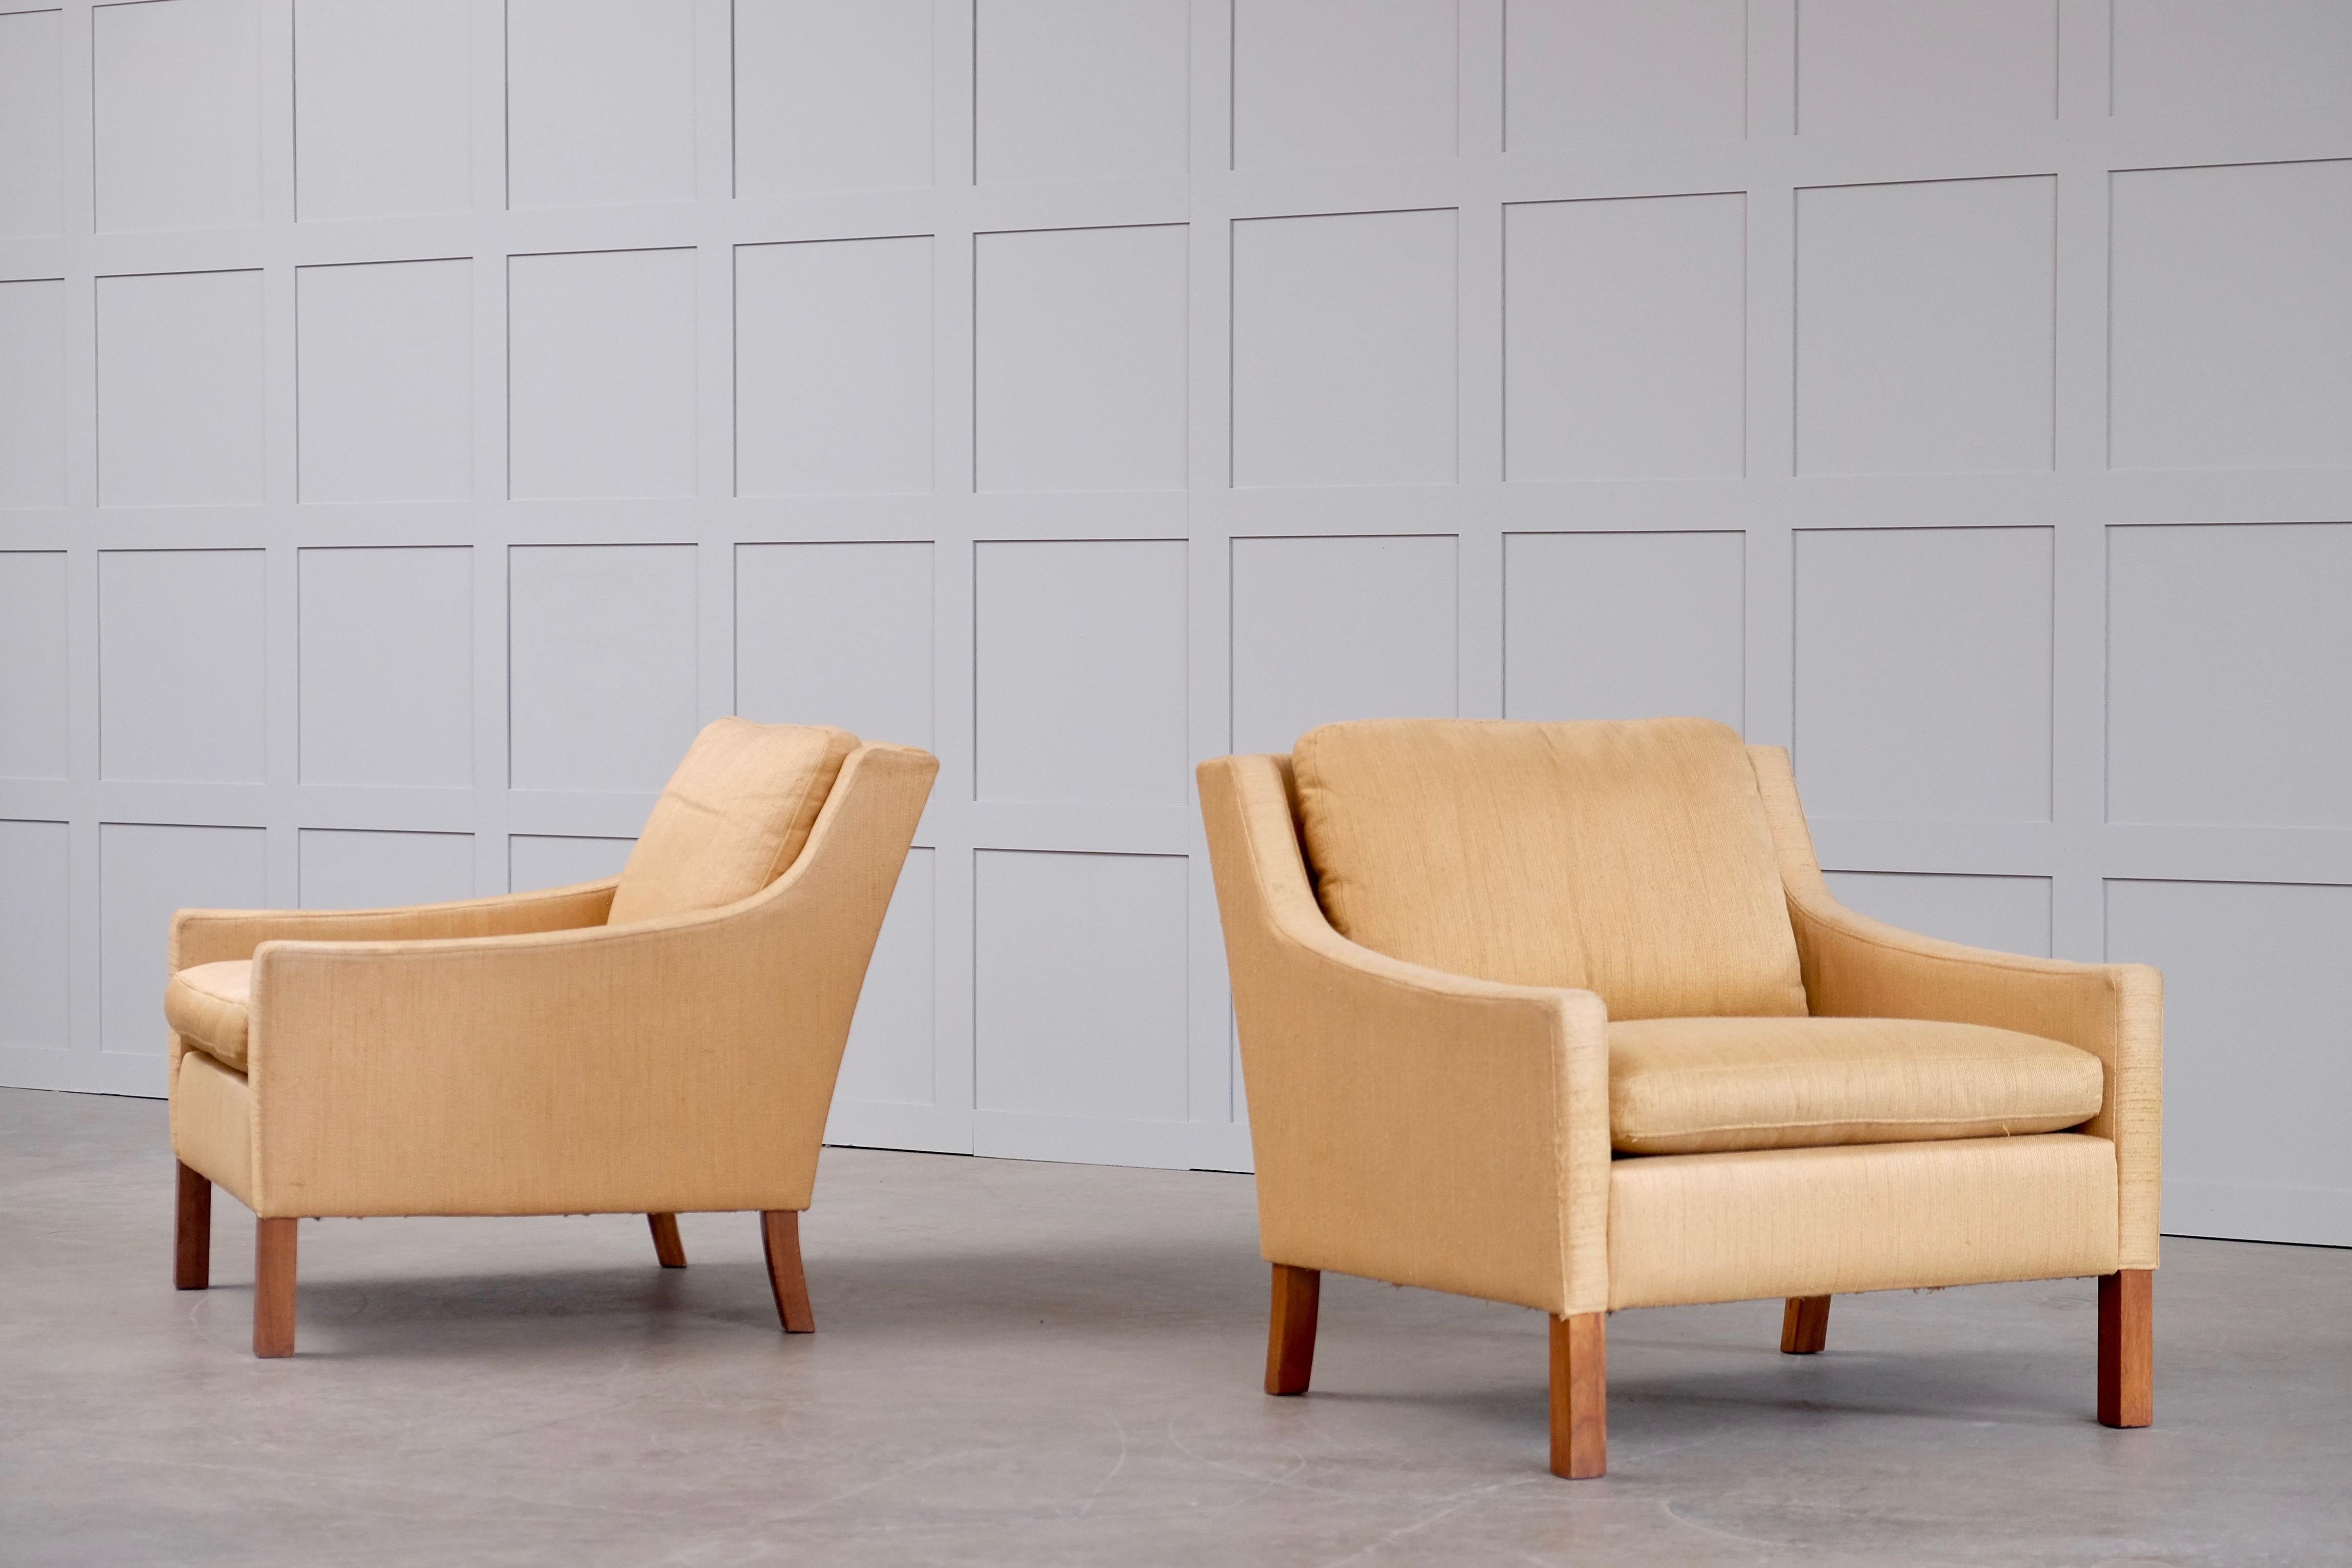 Tolles Paar Ib Kofod-Larsen Sessel in Originalpolsterung. Produziert von OPE, Schweden, 1960er Jahre.
           